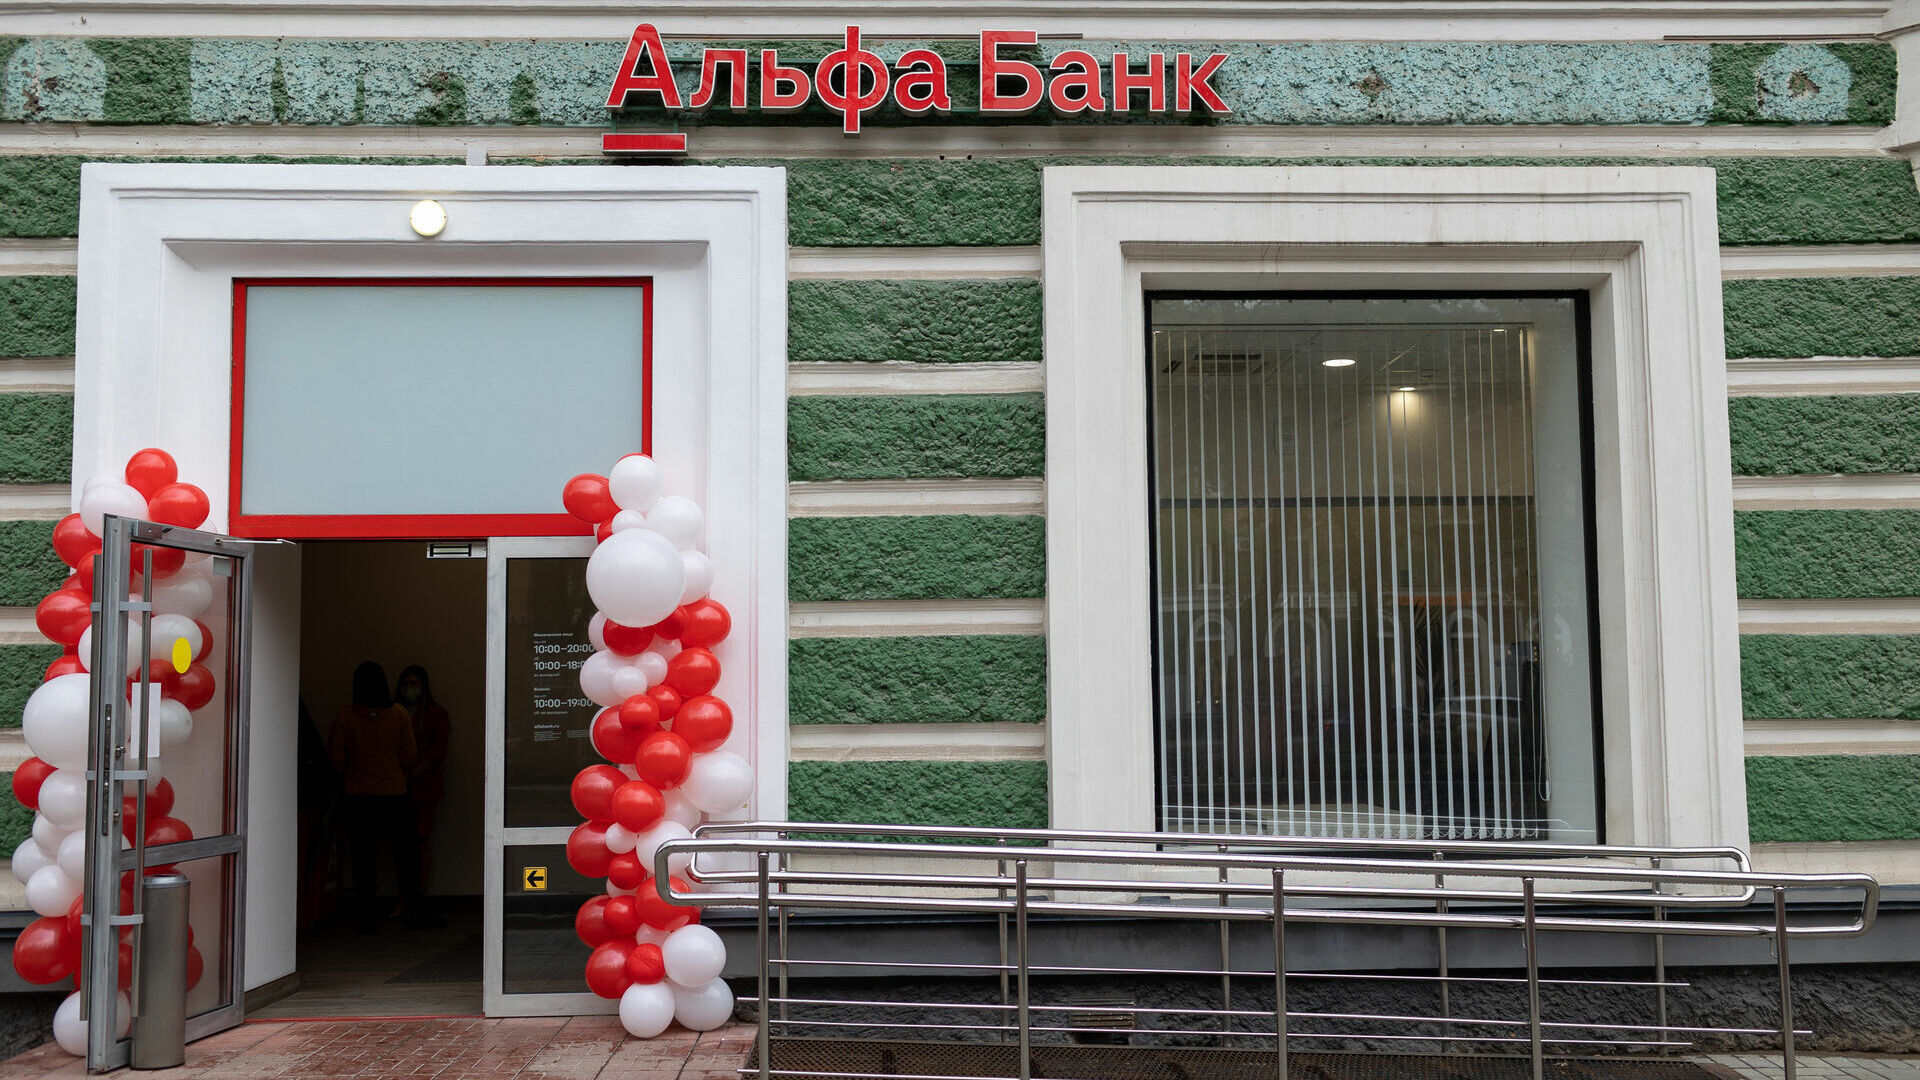 В новом отделении Альфа-Банка клиентов узнают в лицо и нет очередей. Как устроен офис и чем еще удивит?